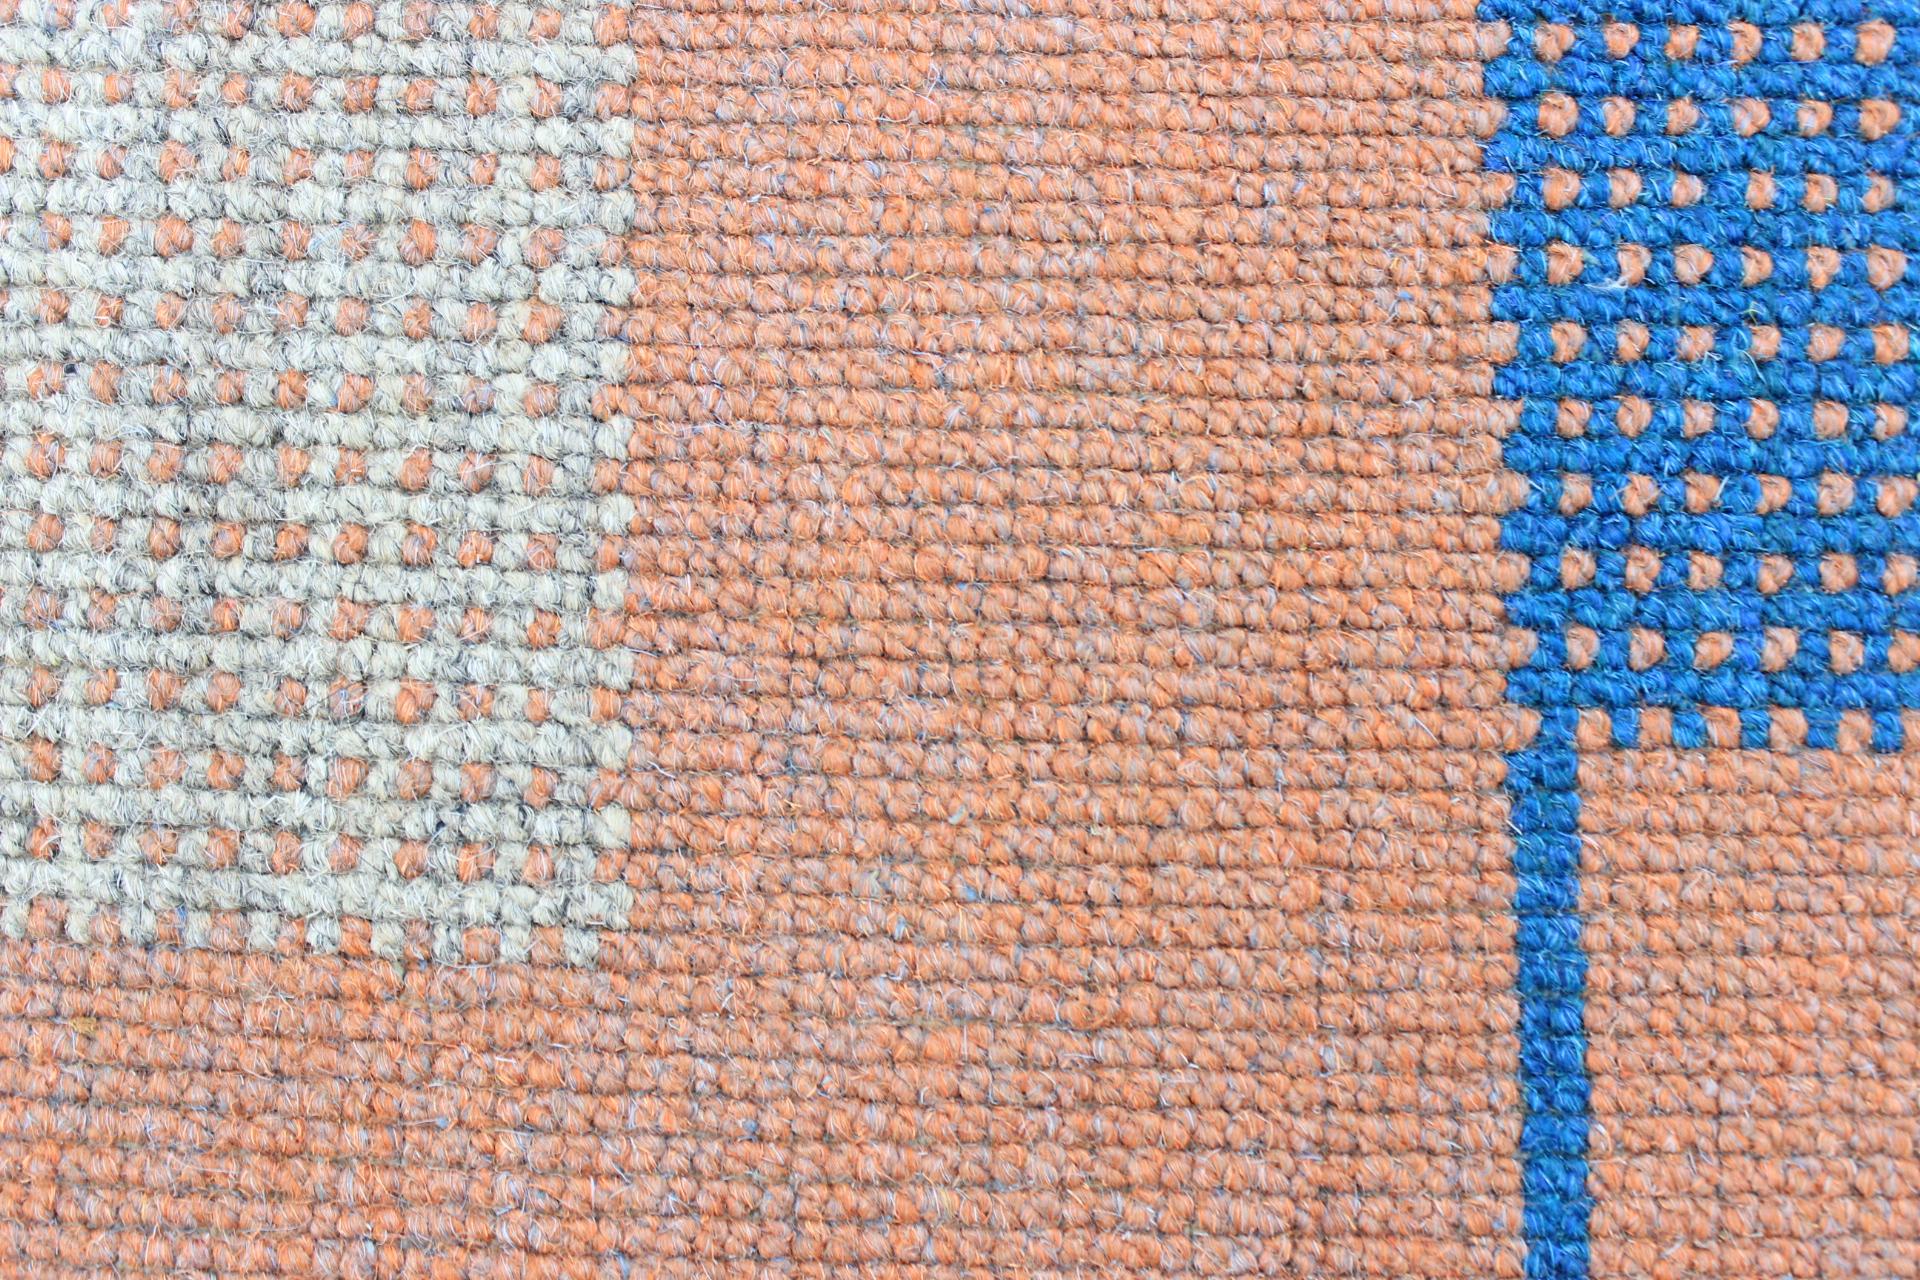 Bauhaus Style Carpet / Rug 2